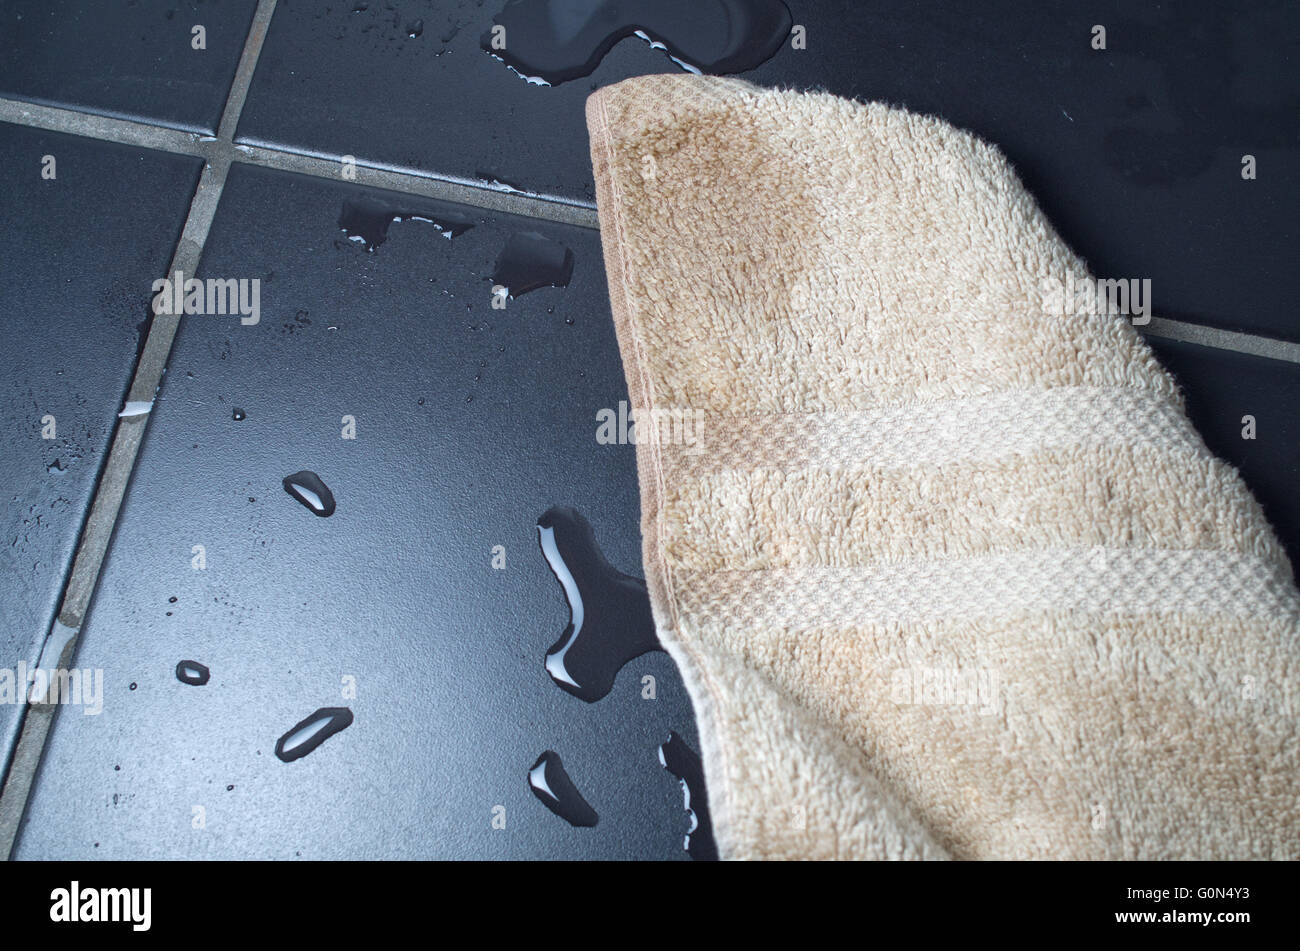 a wet towel